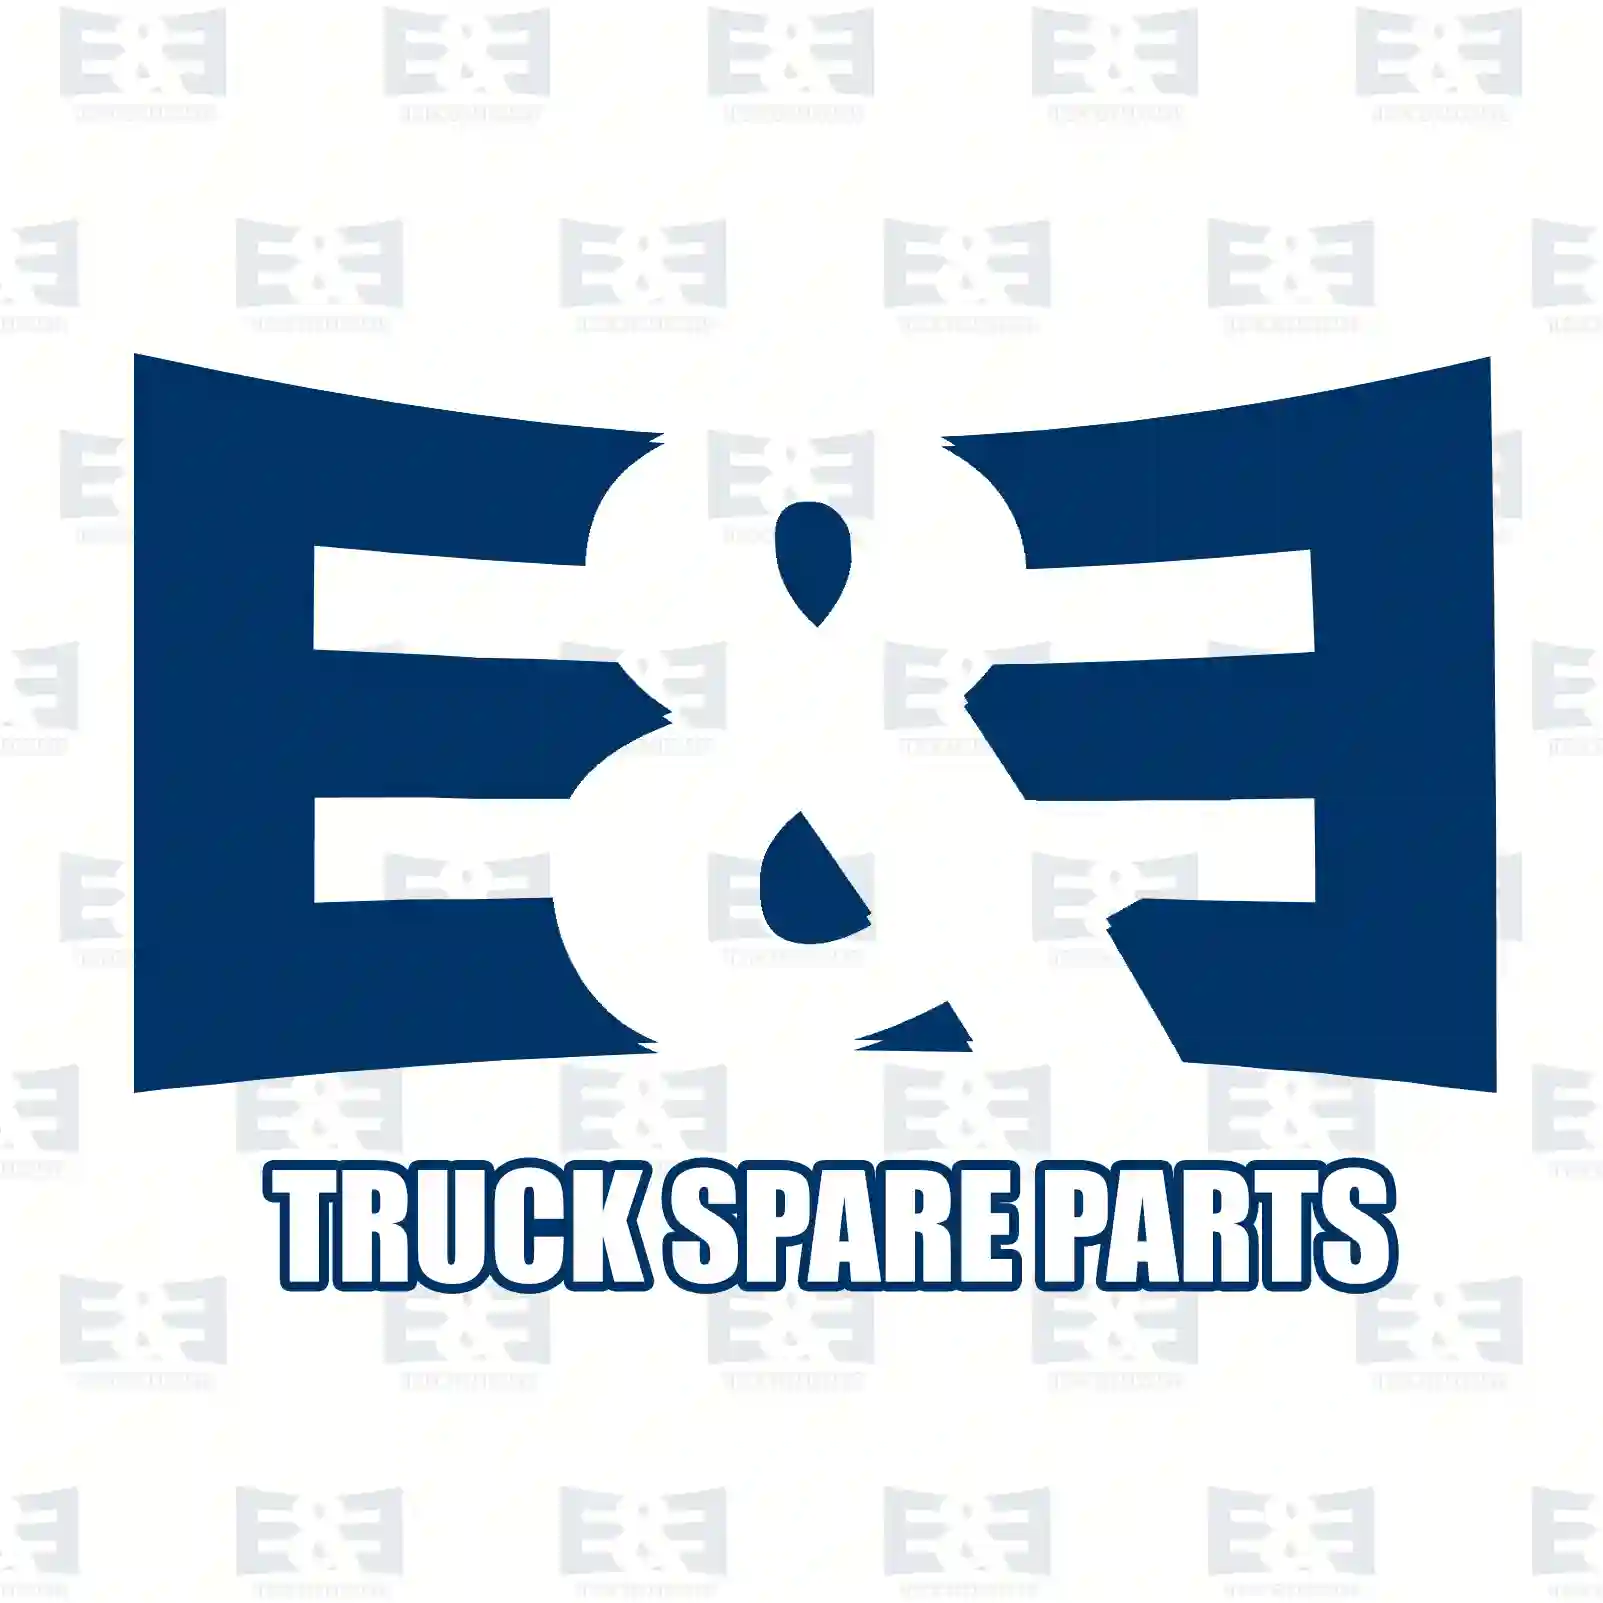 Oil seal, 2E2295141, 941143, 949573, 9495730, ZG02655-0008 ||  2E2295141 E&E Truck Spare Parts | Truck Spare Parts, Auotomotive Spare Parts Oil seal, 2E2295141, 941143, 949573, 9495730, ZG02655-0008 ||  2E2295141 E&E Truck Spare Parts | Truck Spare Parts, Auotomotive Spare Parts